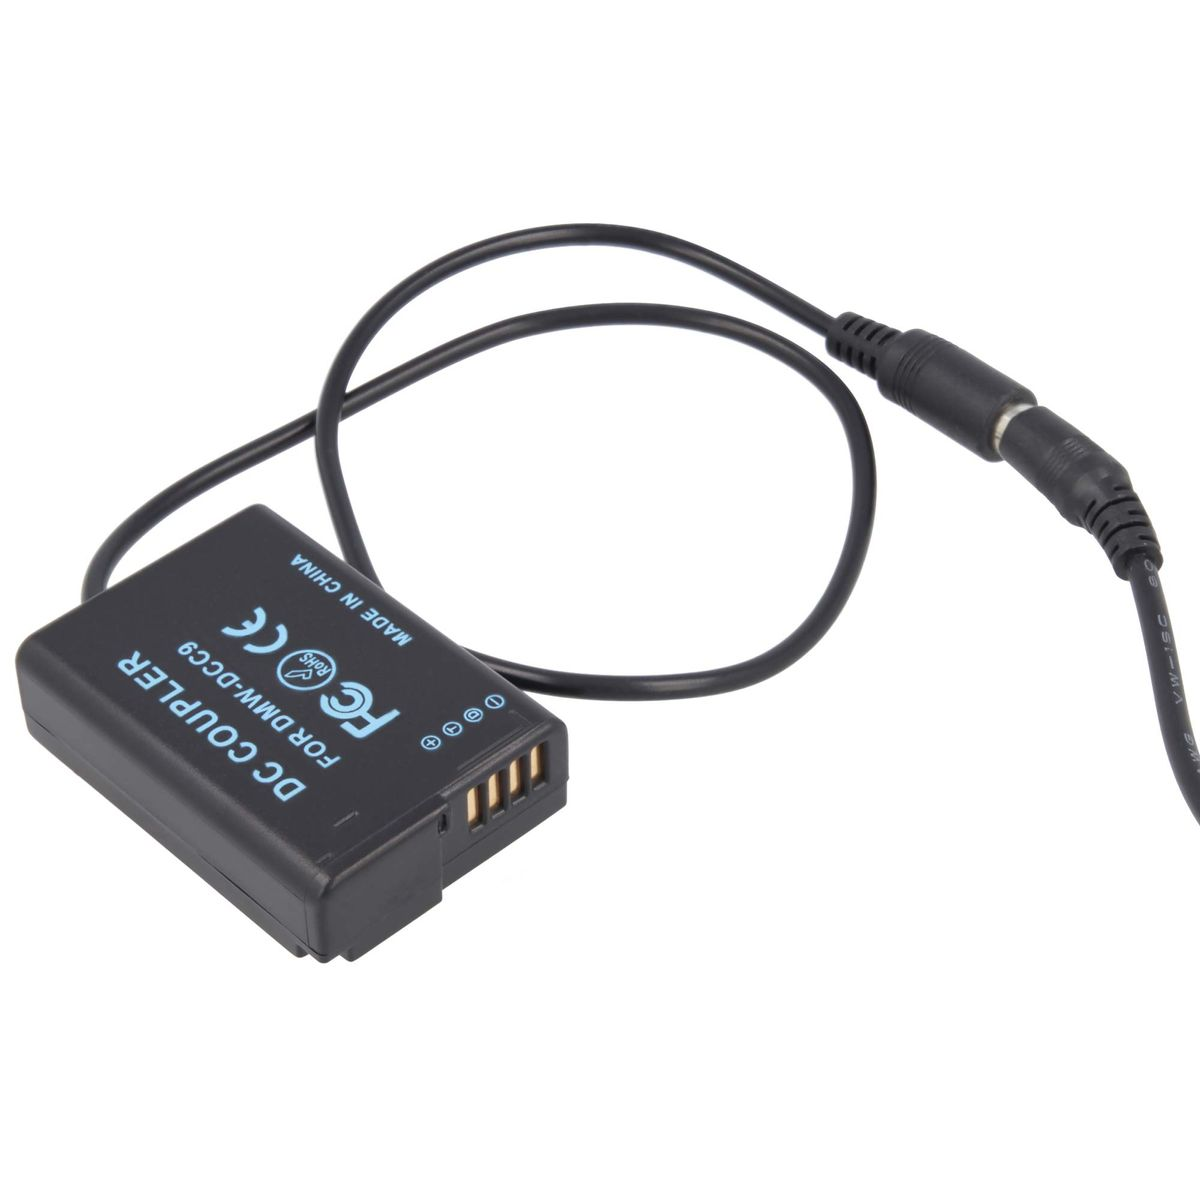 AKKU-KING USB Adapter + keine Ladegerät mit Kuppler DCC9 kompatibel Panasonic, Panasonic Angabe